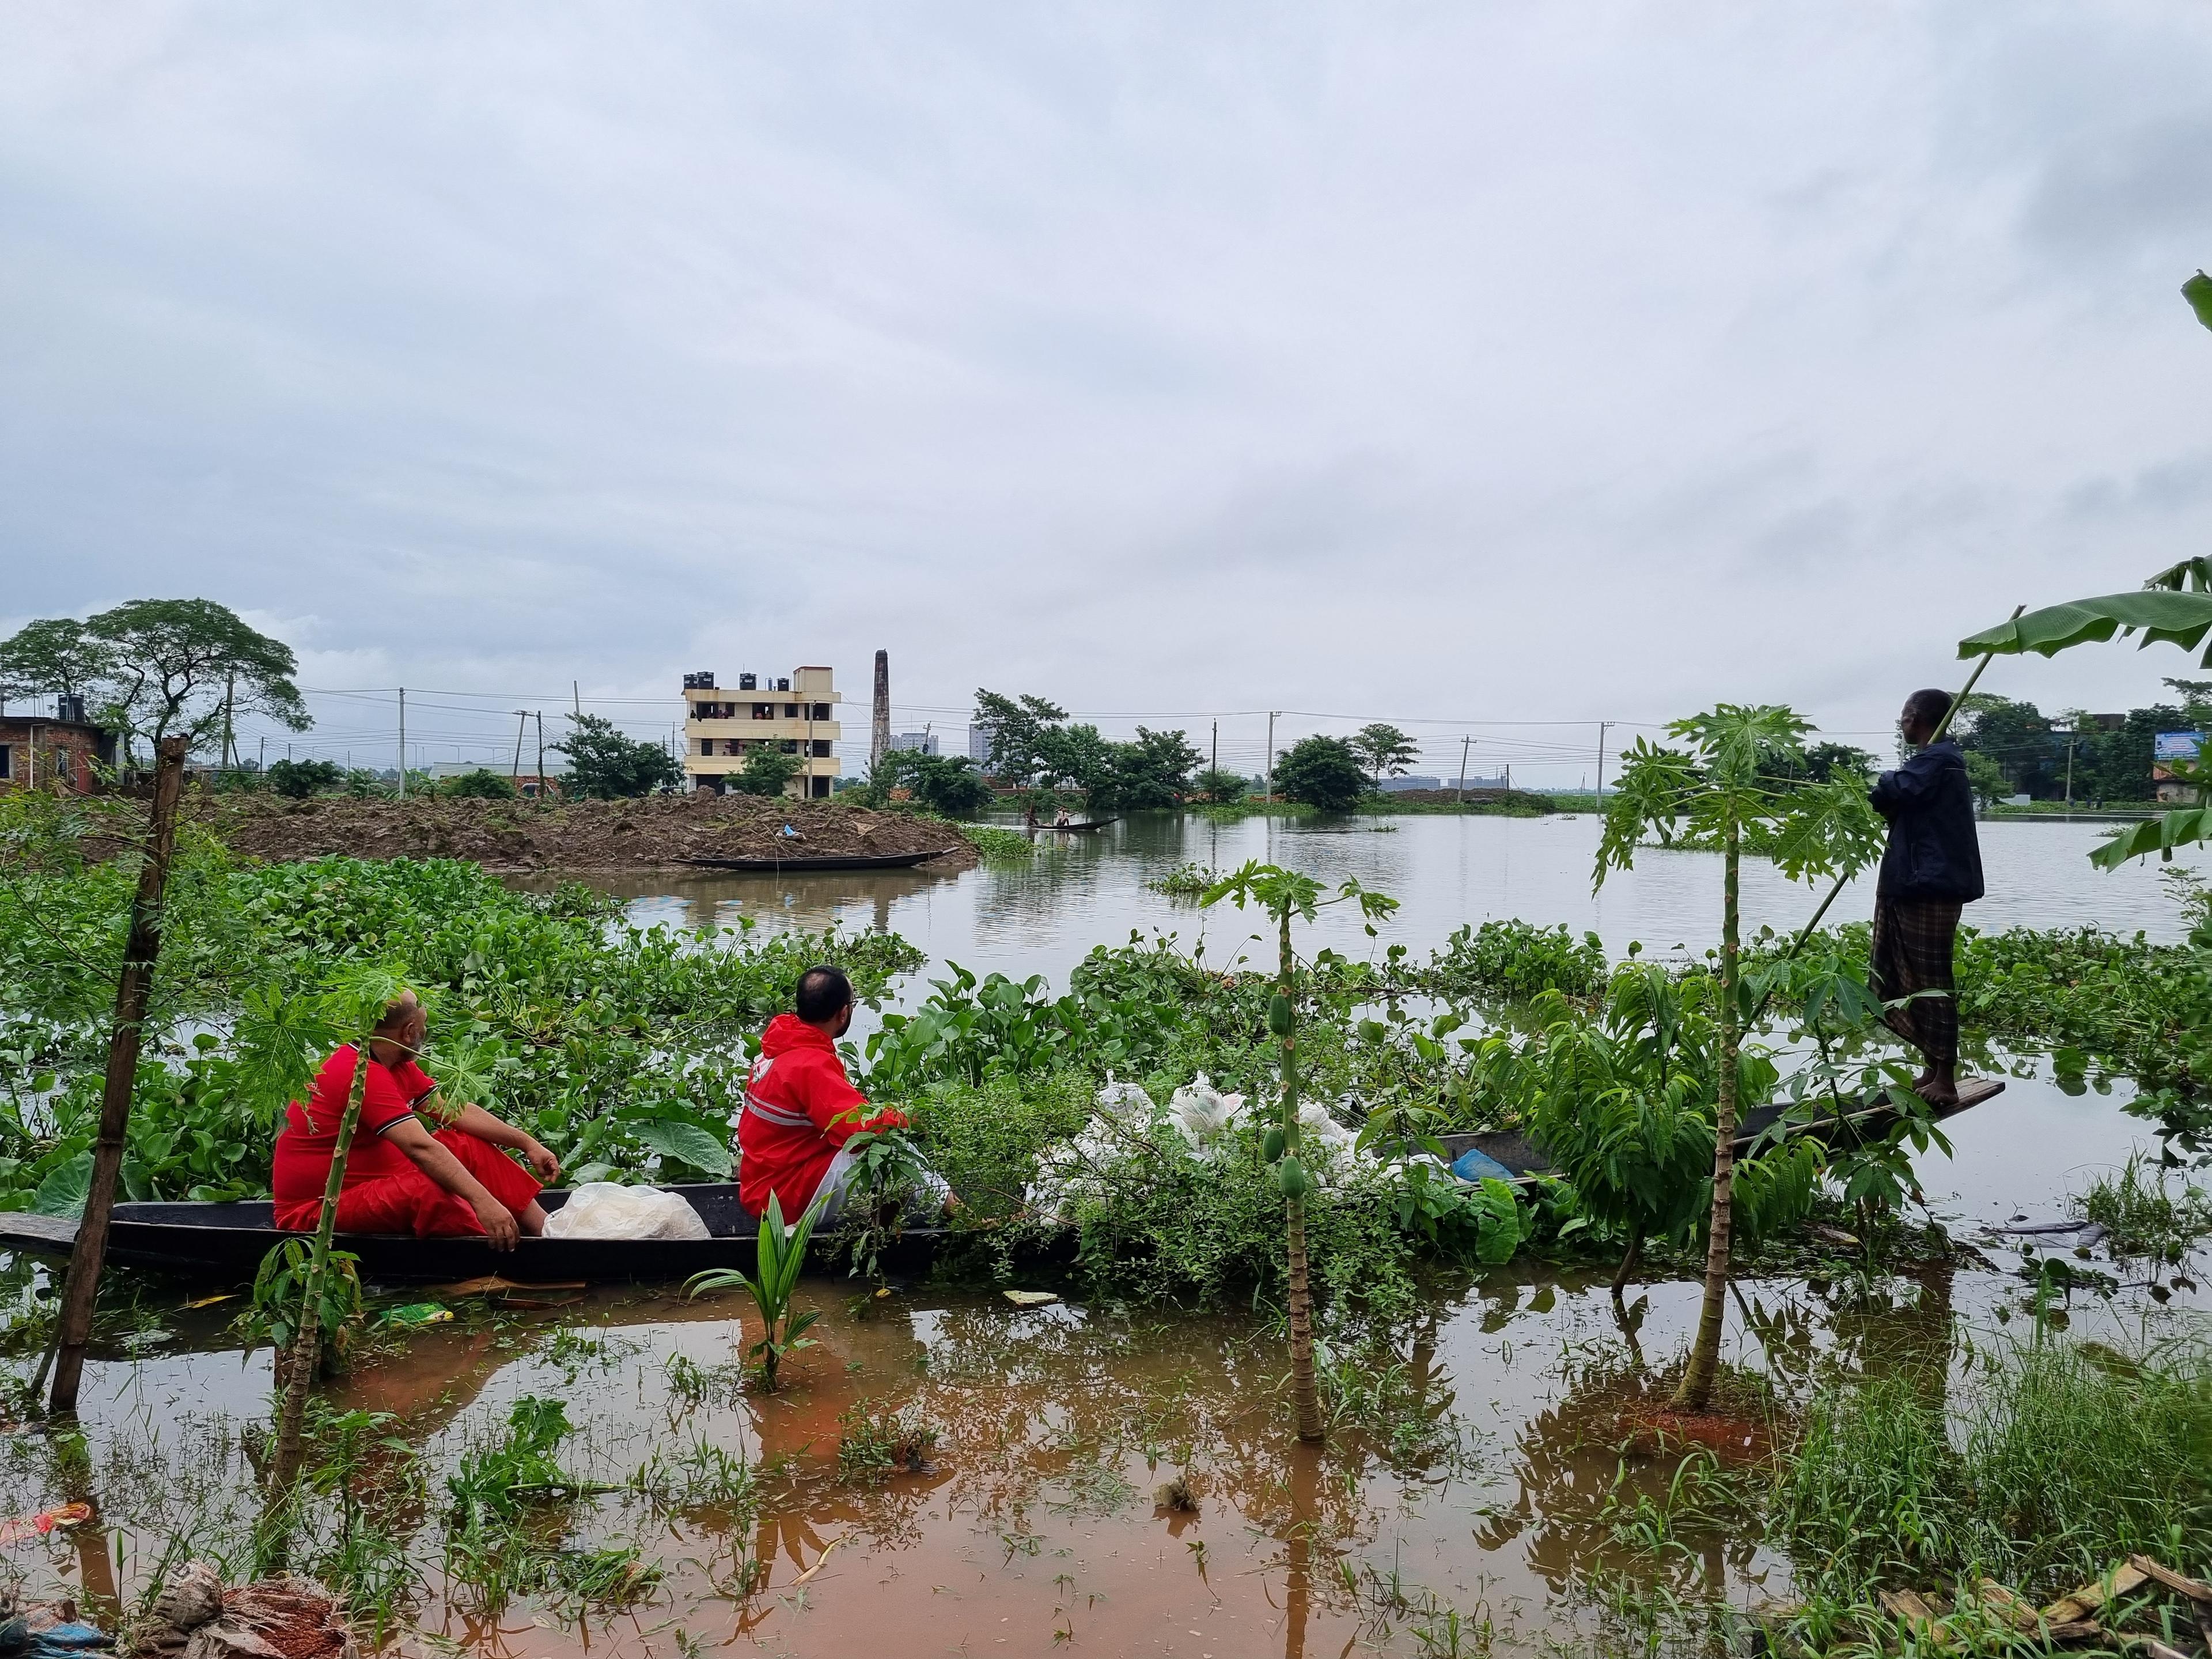 A Sylhet, nel nord del Bangladesh, c’è uno scenario desolante: numerosi raccolti sono andati distrutti e altri sono minacciati dalle incessanti piogge torrenziali.